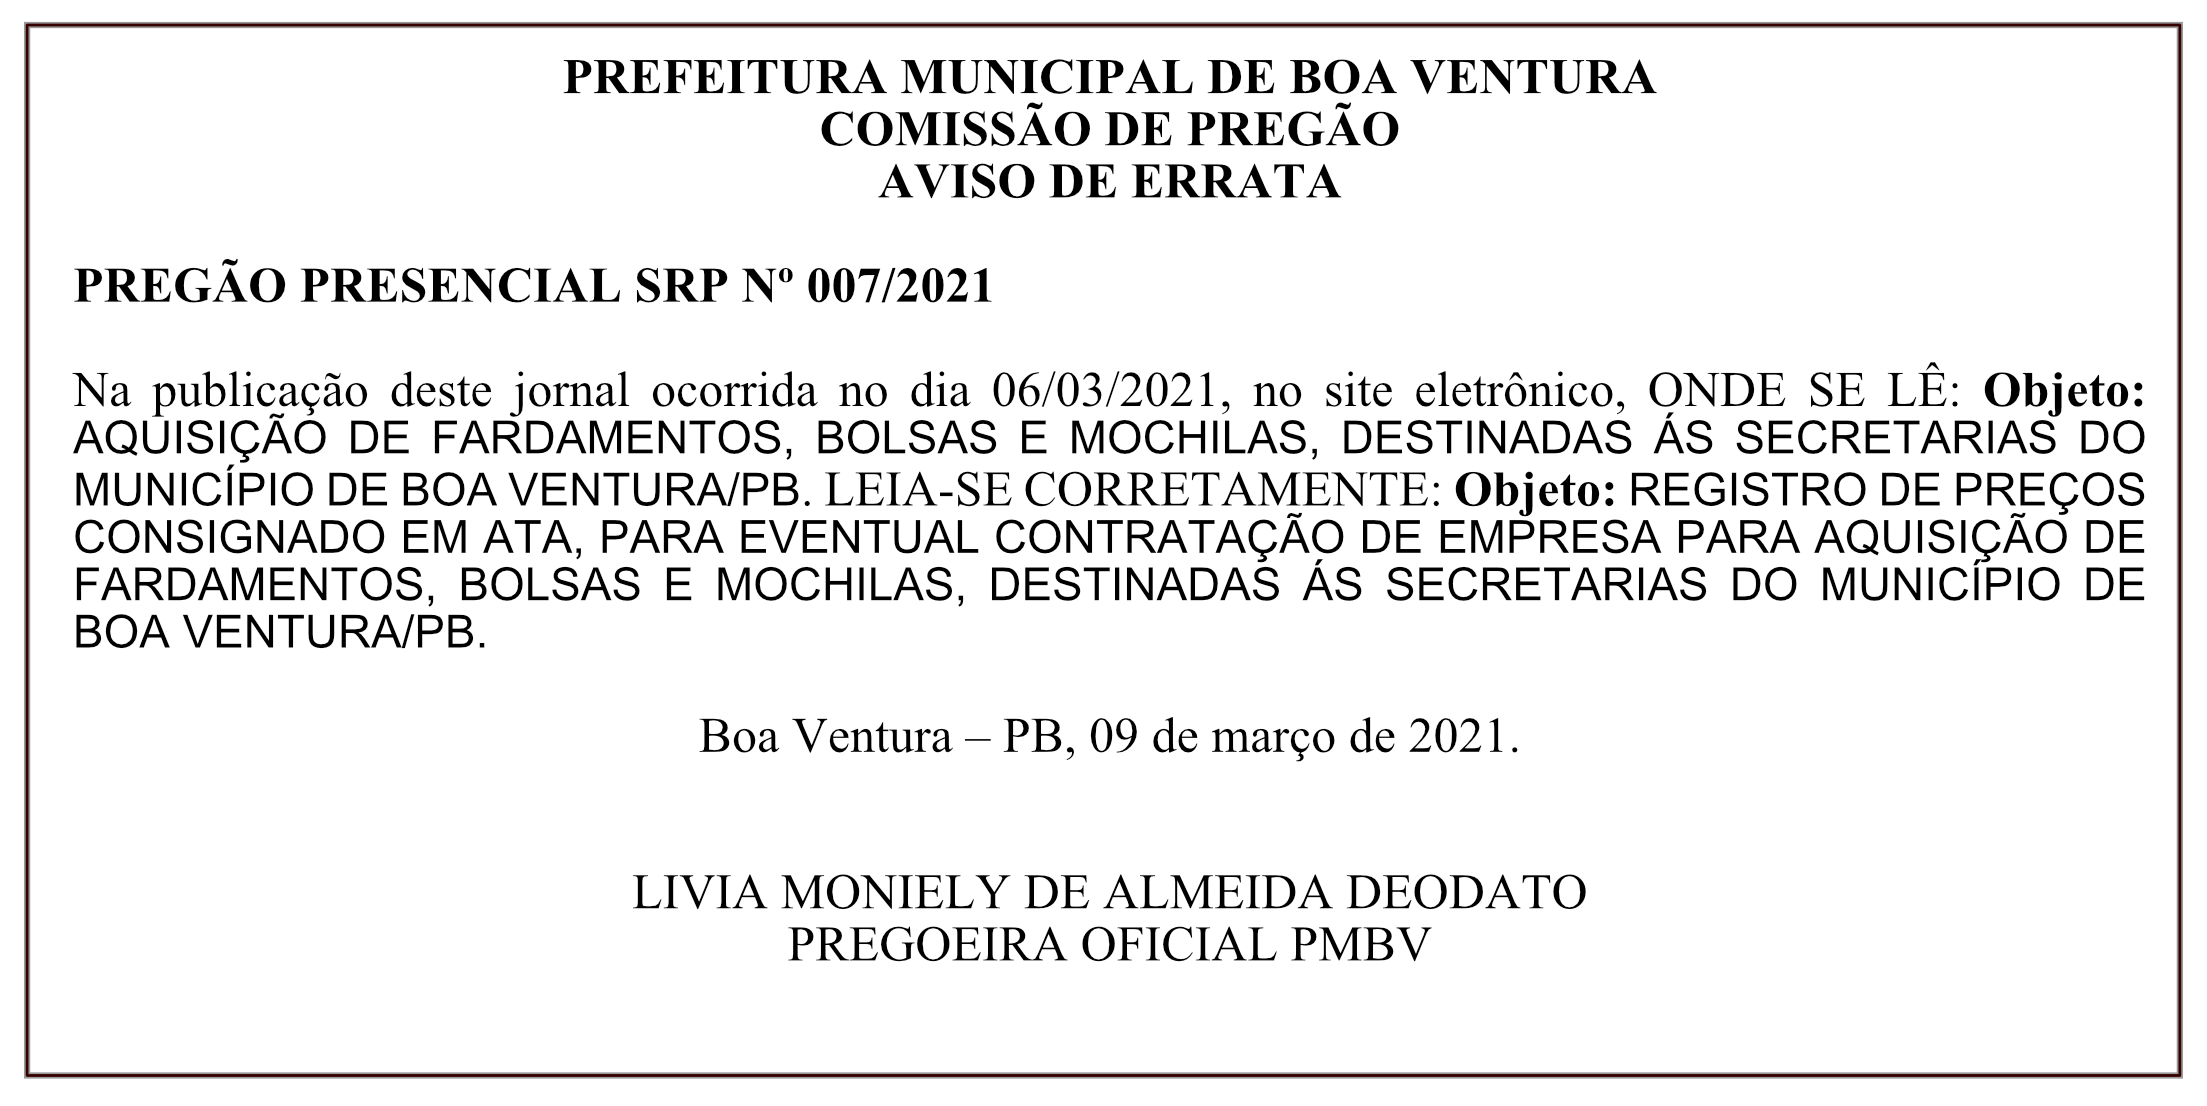 PREFEITURA MUNICIPAL DE BOA VENTURA – COMISSÃO DE PREGÃO – AVISO DE ERRATA – PREGÃO PRESENCIAL SRP Nº 007/2021